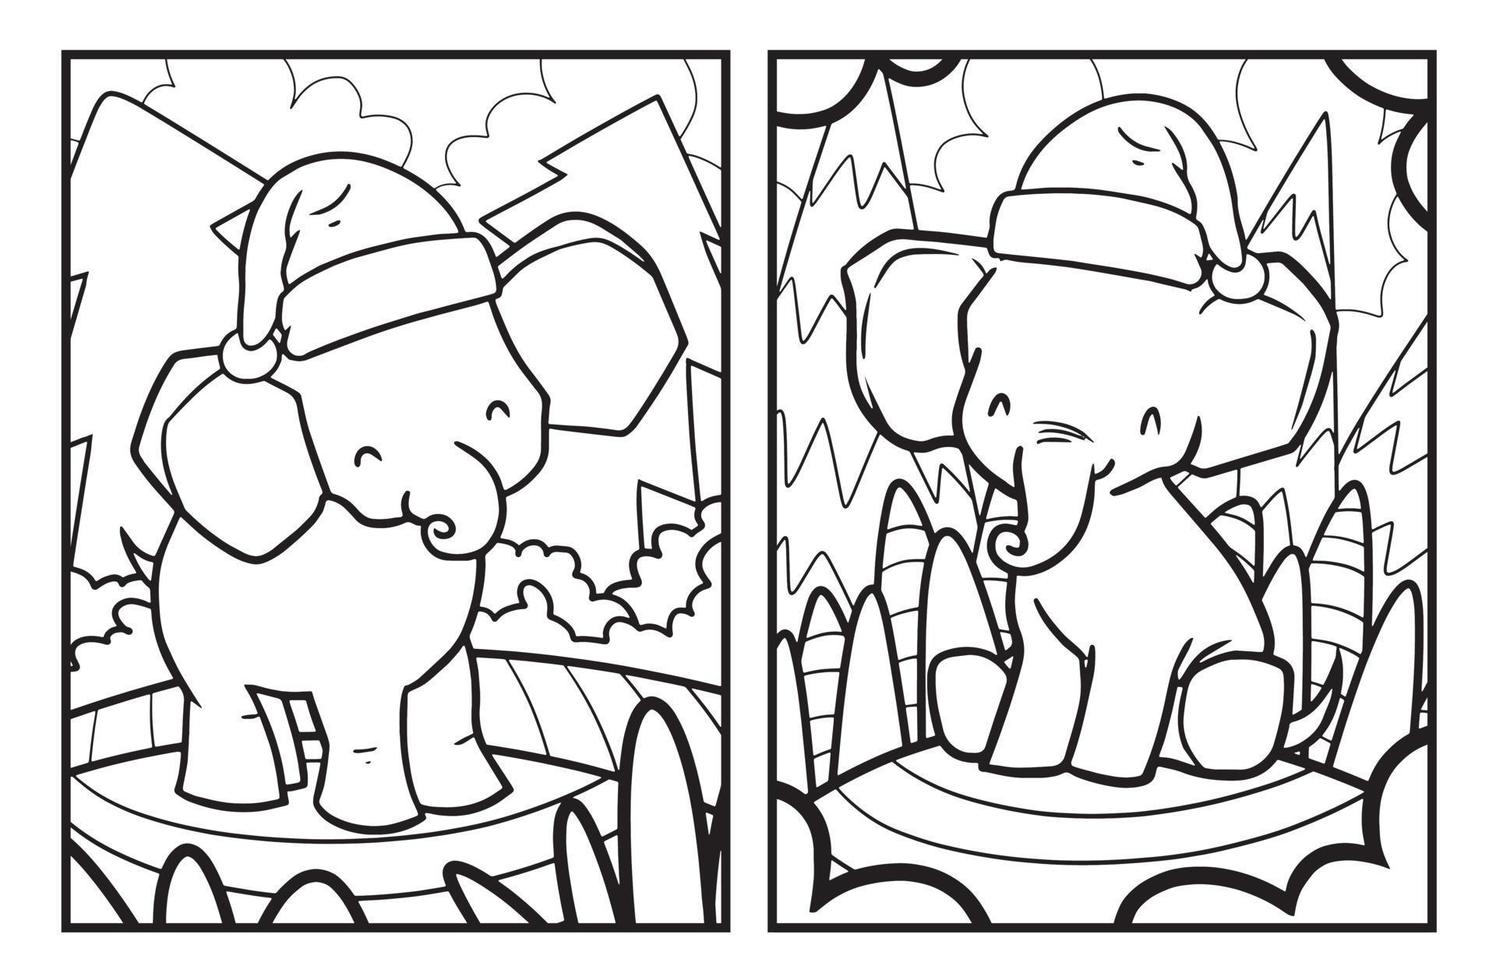 Dibujos de elefantes navideños para colorear vector